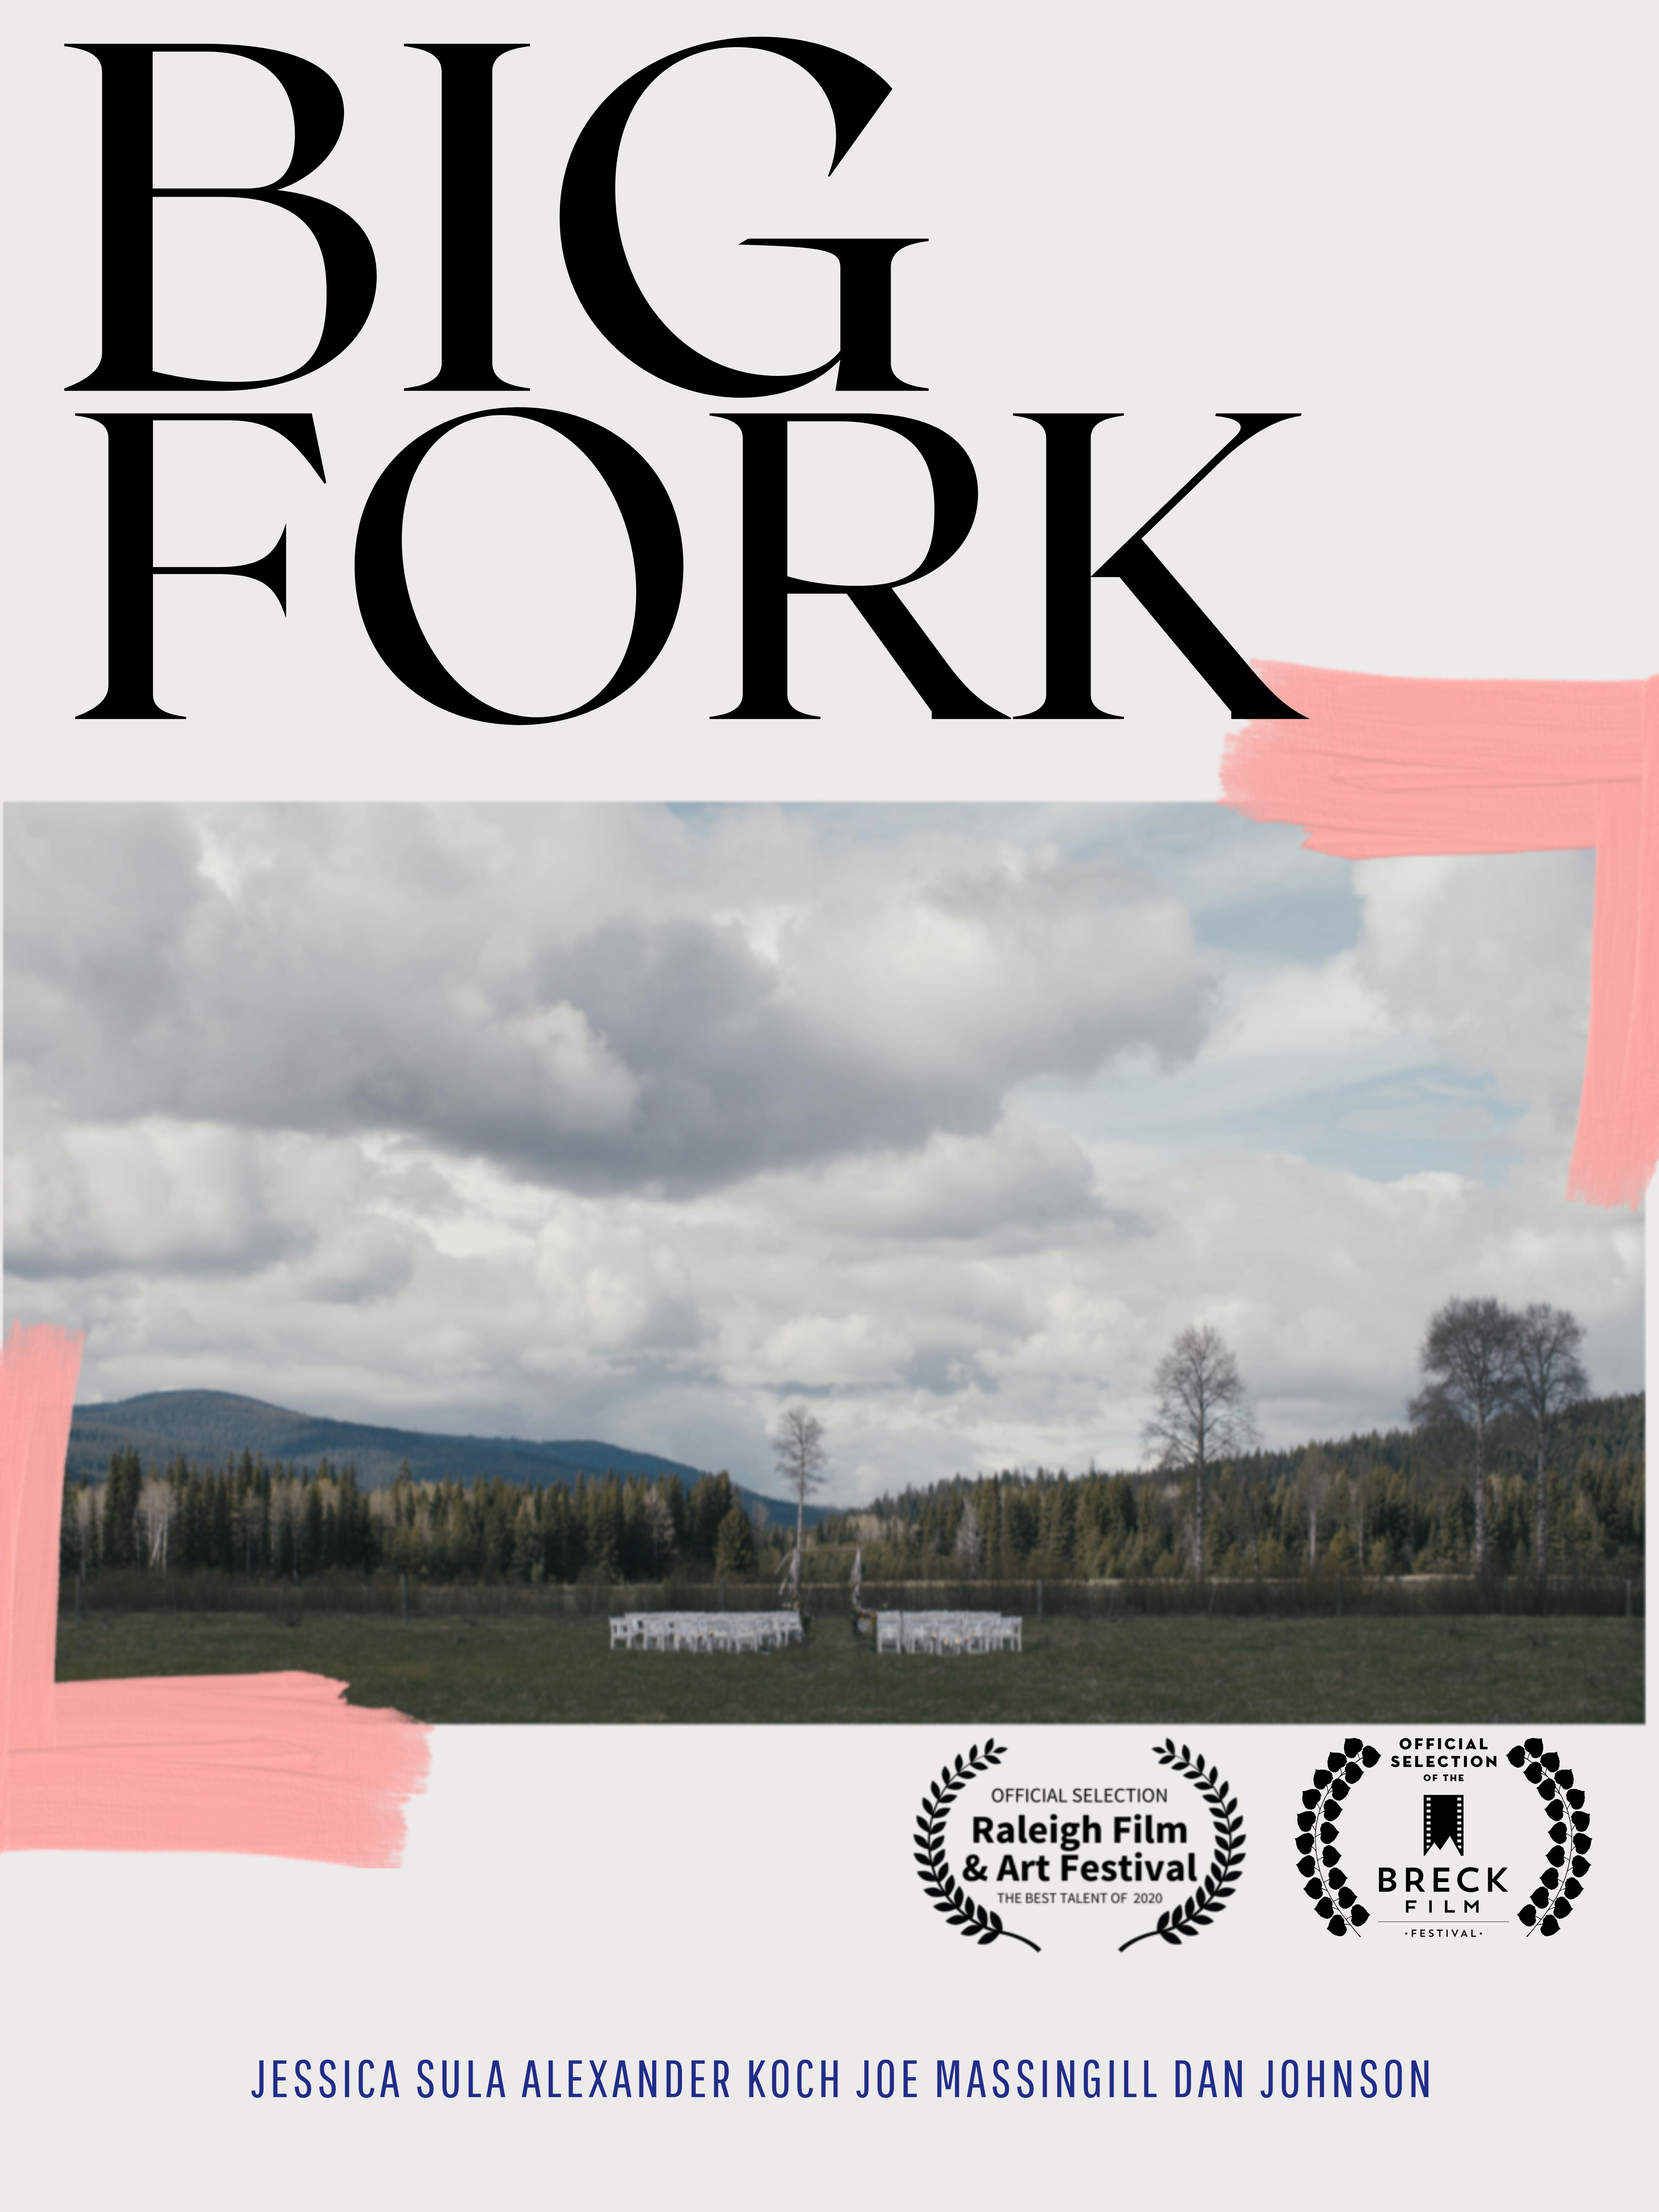 Big Fork